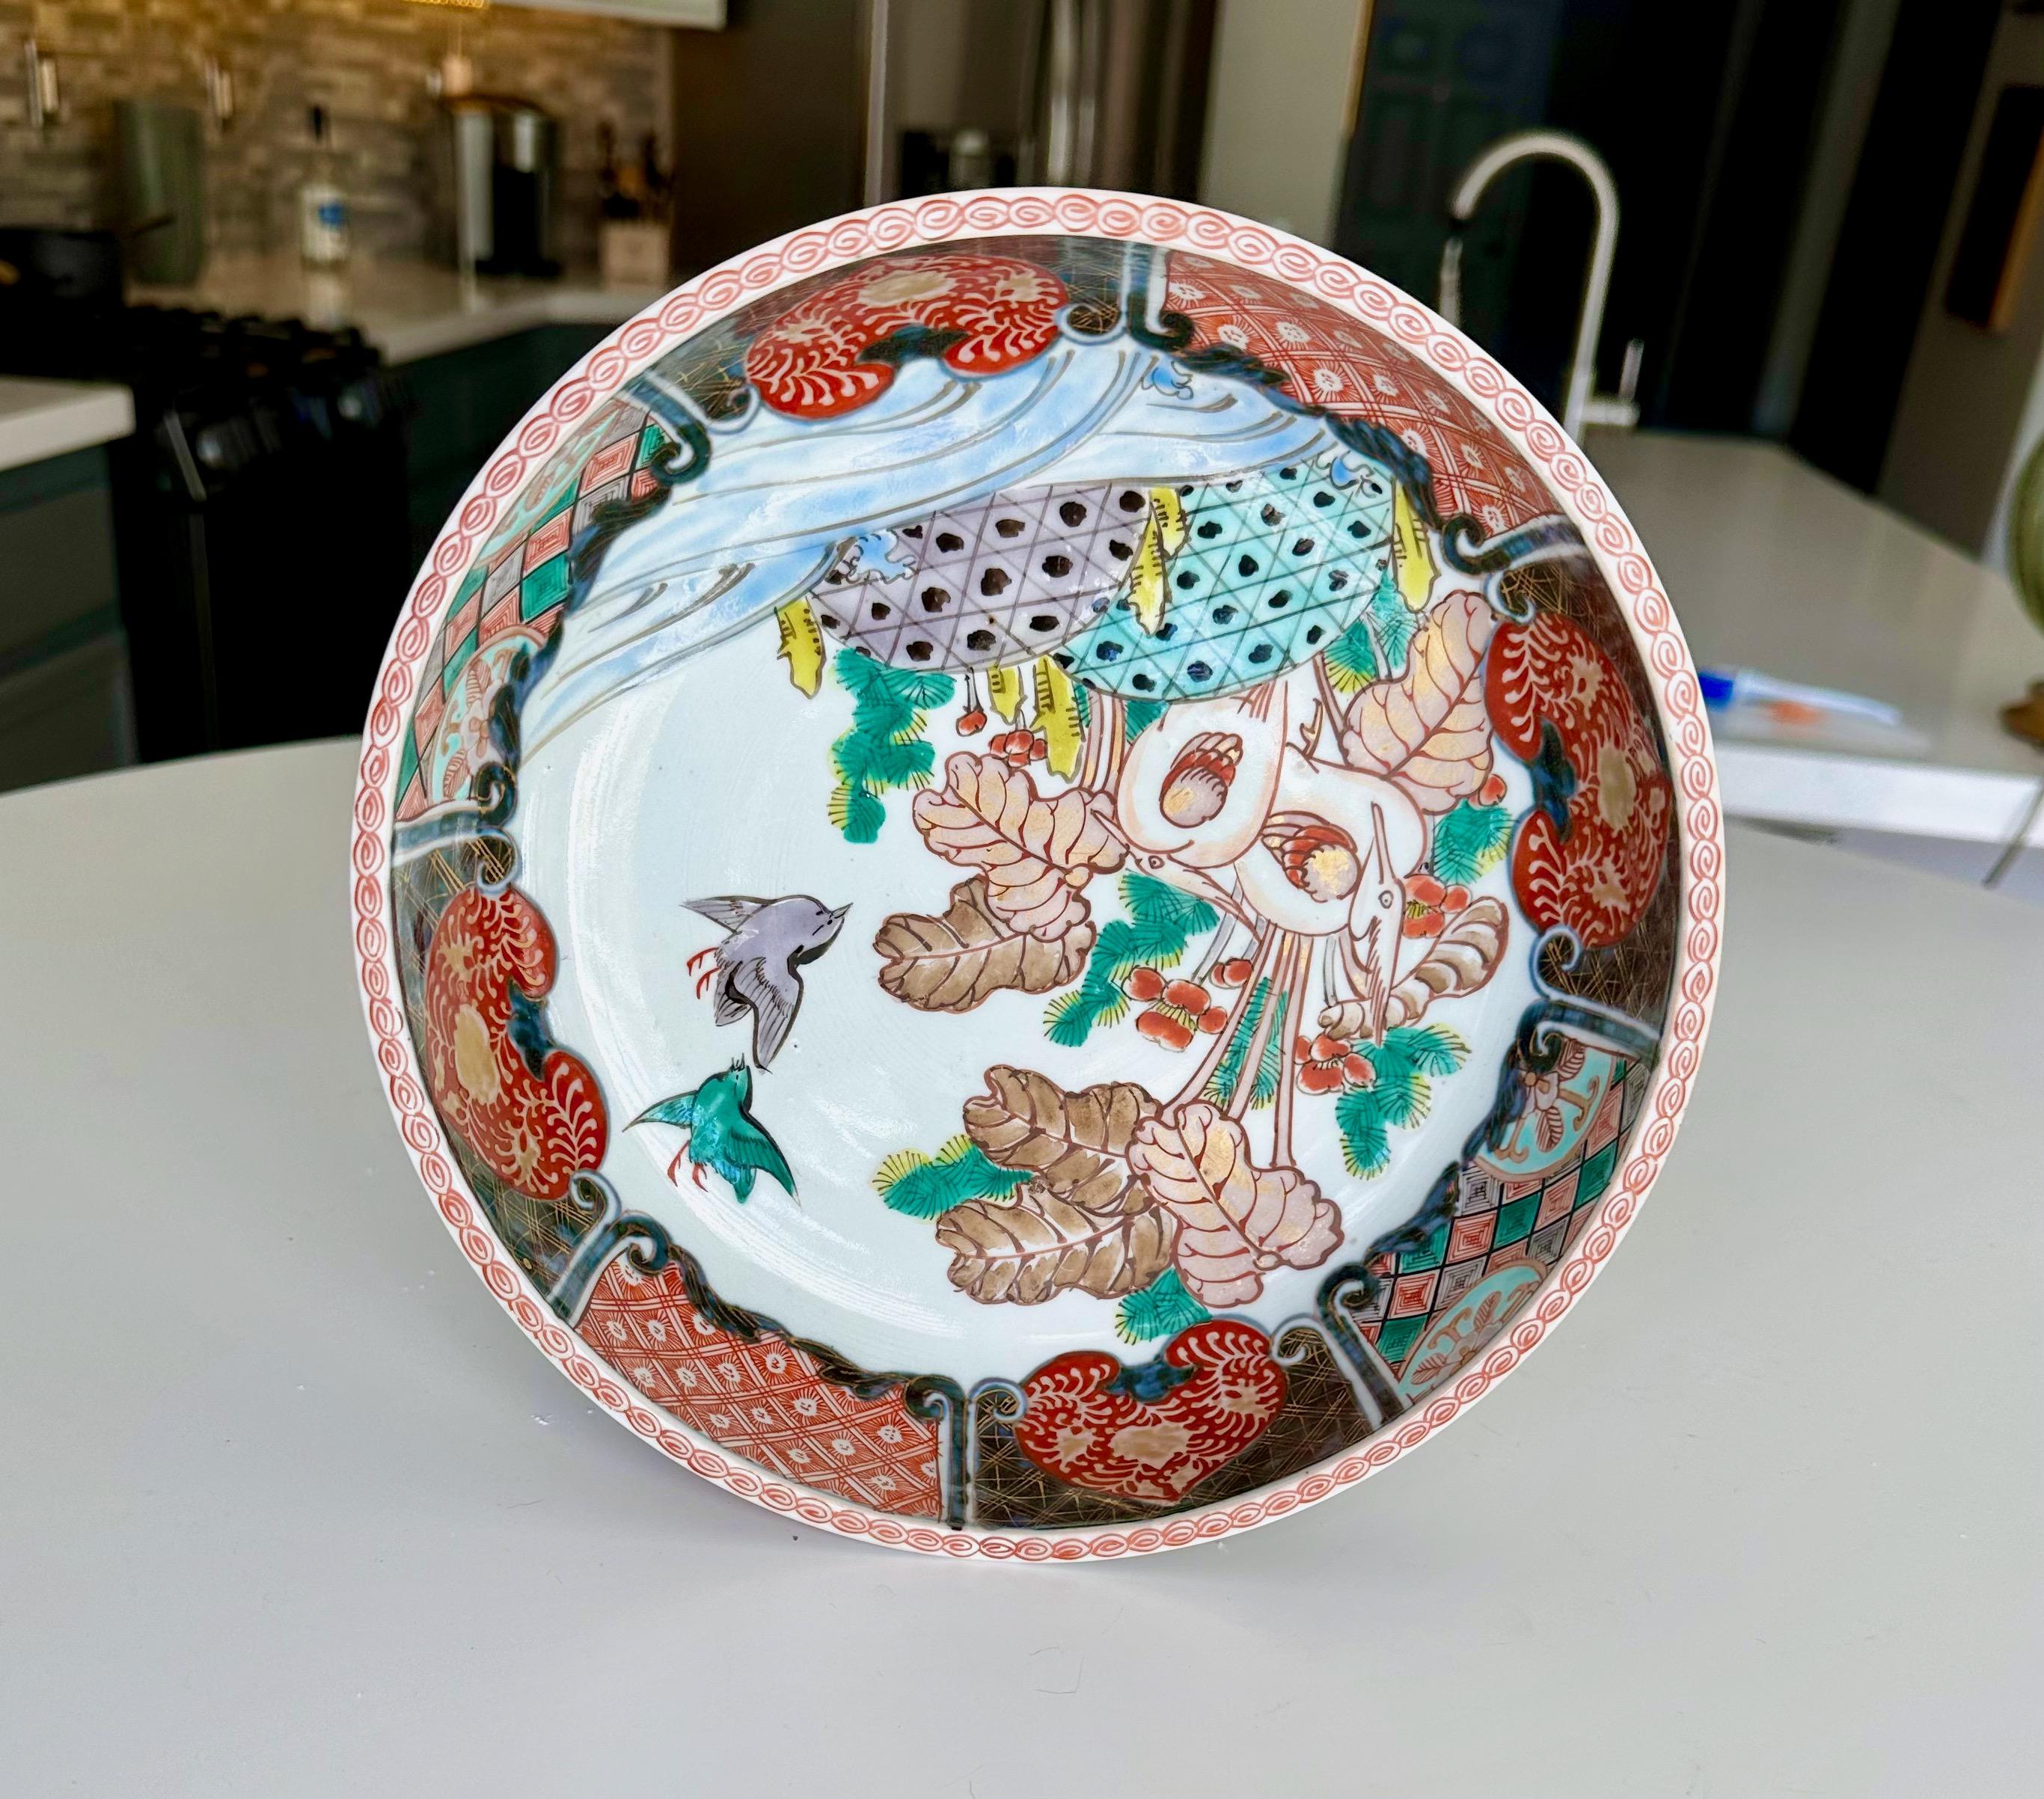 Handbemalte japanische Imari-Porzellanschale mit Vögeln, Blättern und Blumenmotiven.